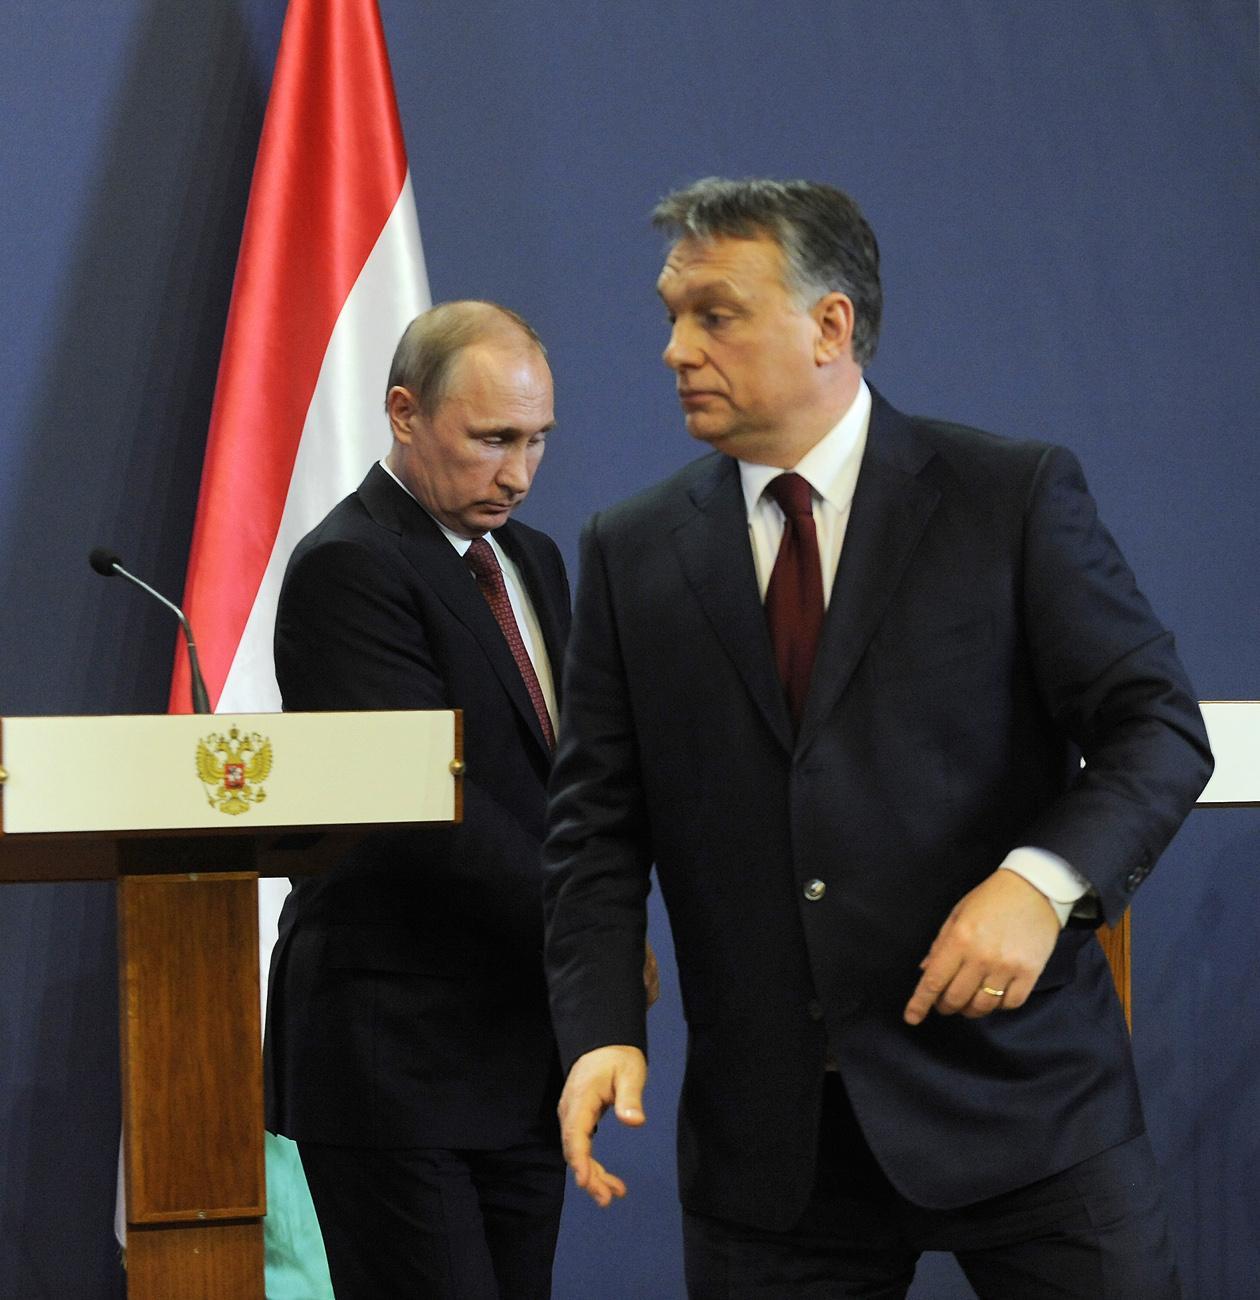 Putyin és Orbán a parlamentben: muszáj jóban lenni?